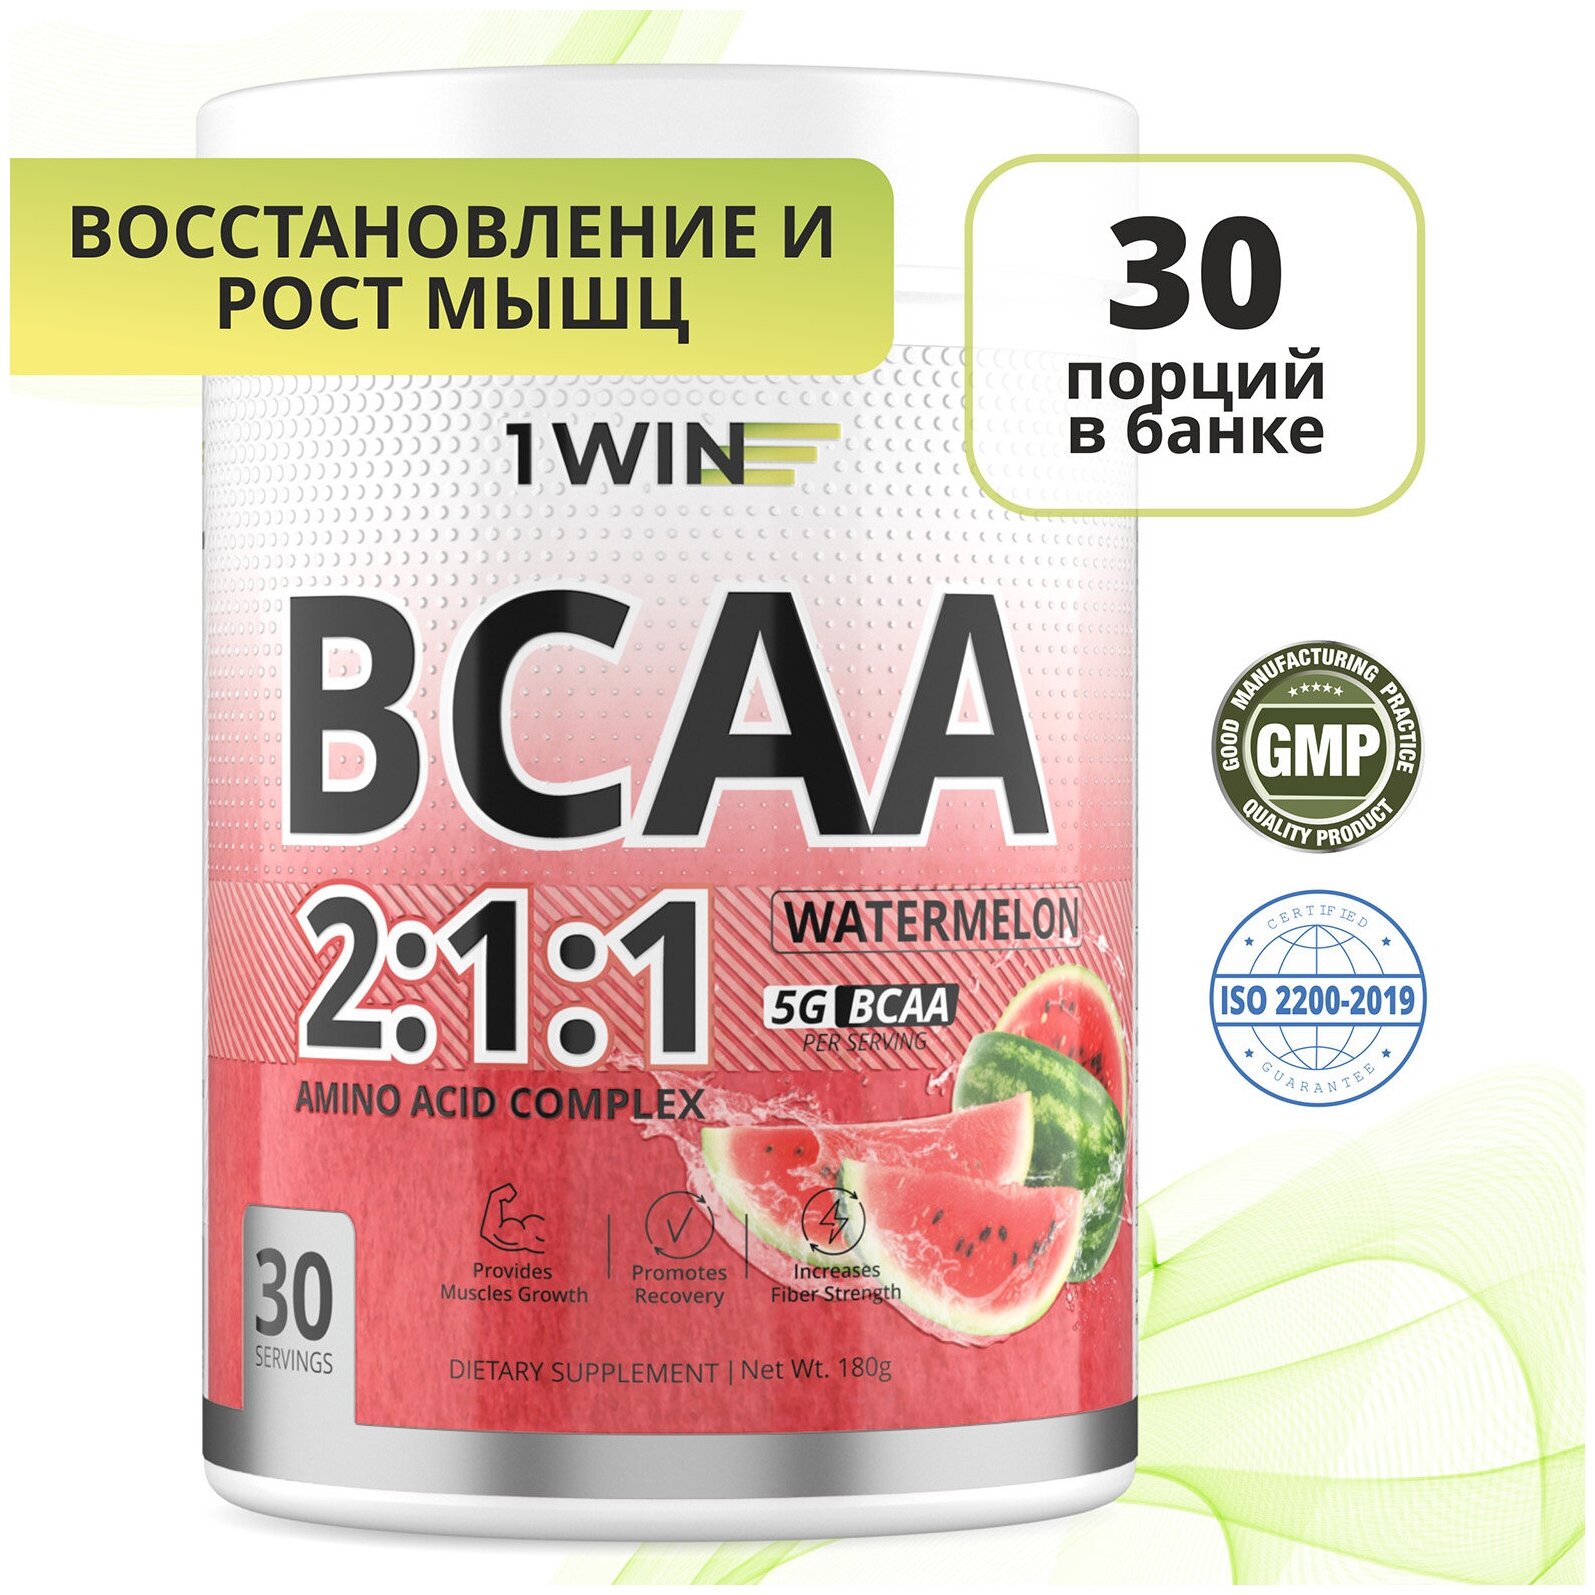 Аминокислоты BCAA 2:1:1 (БЦАА), Быстрорастворимые, со вкусом Арбуз, 30 порций, 180грамм